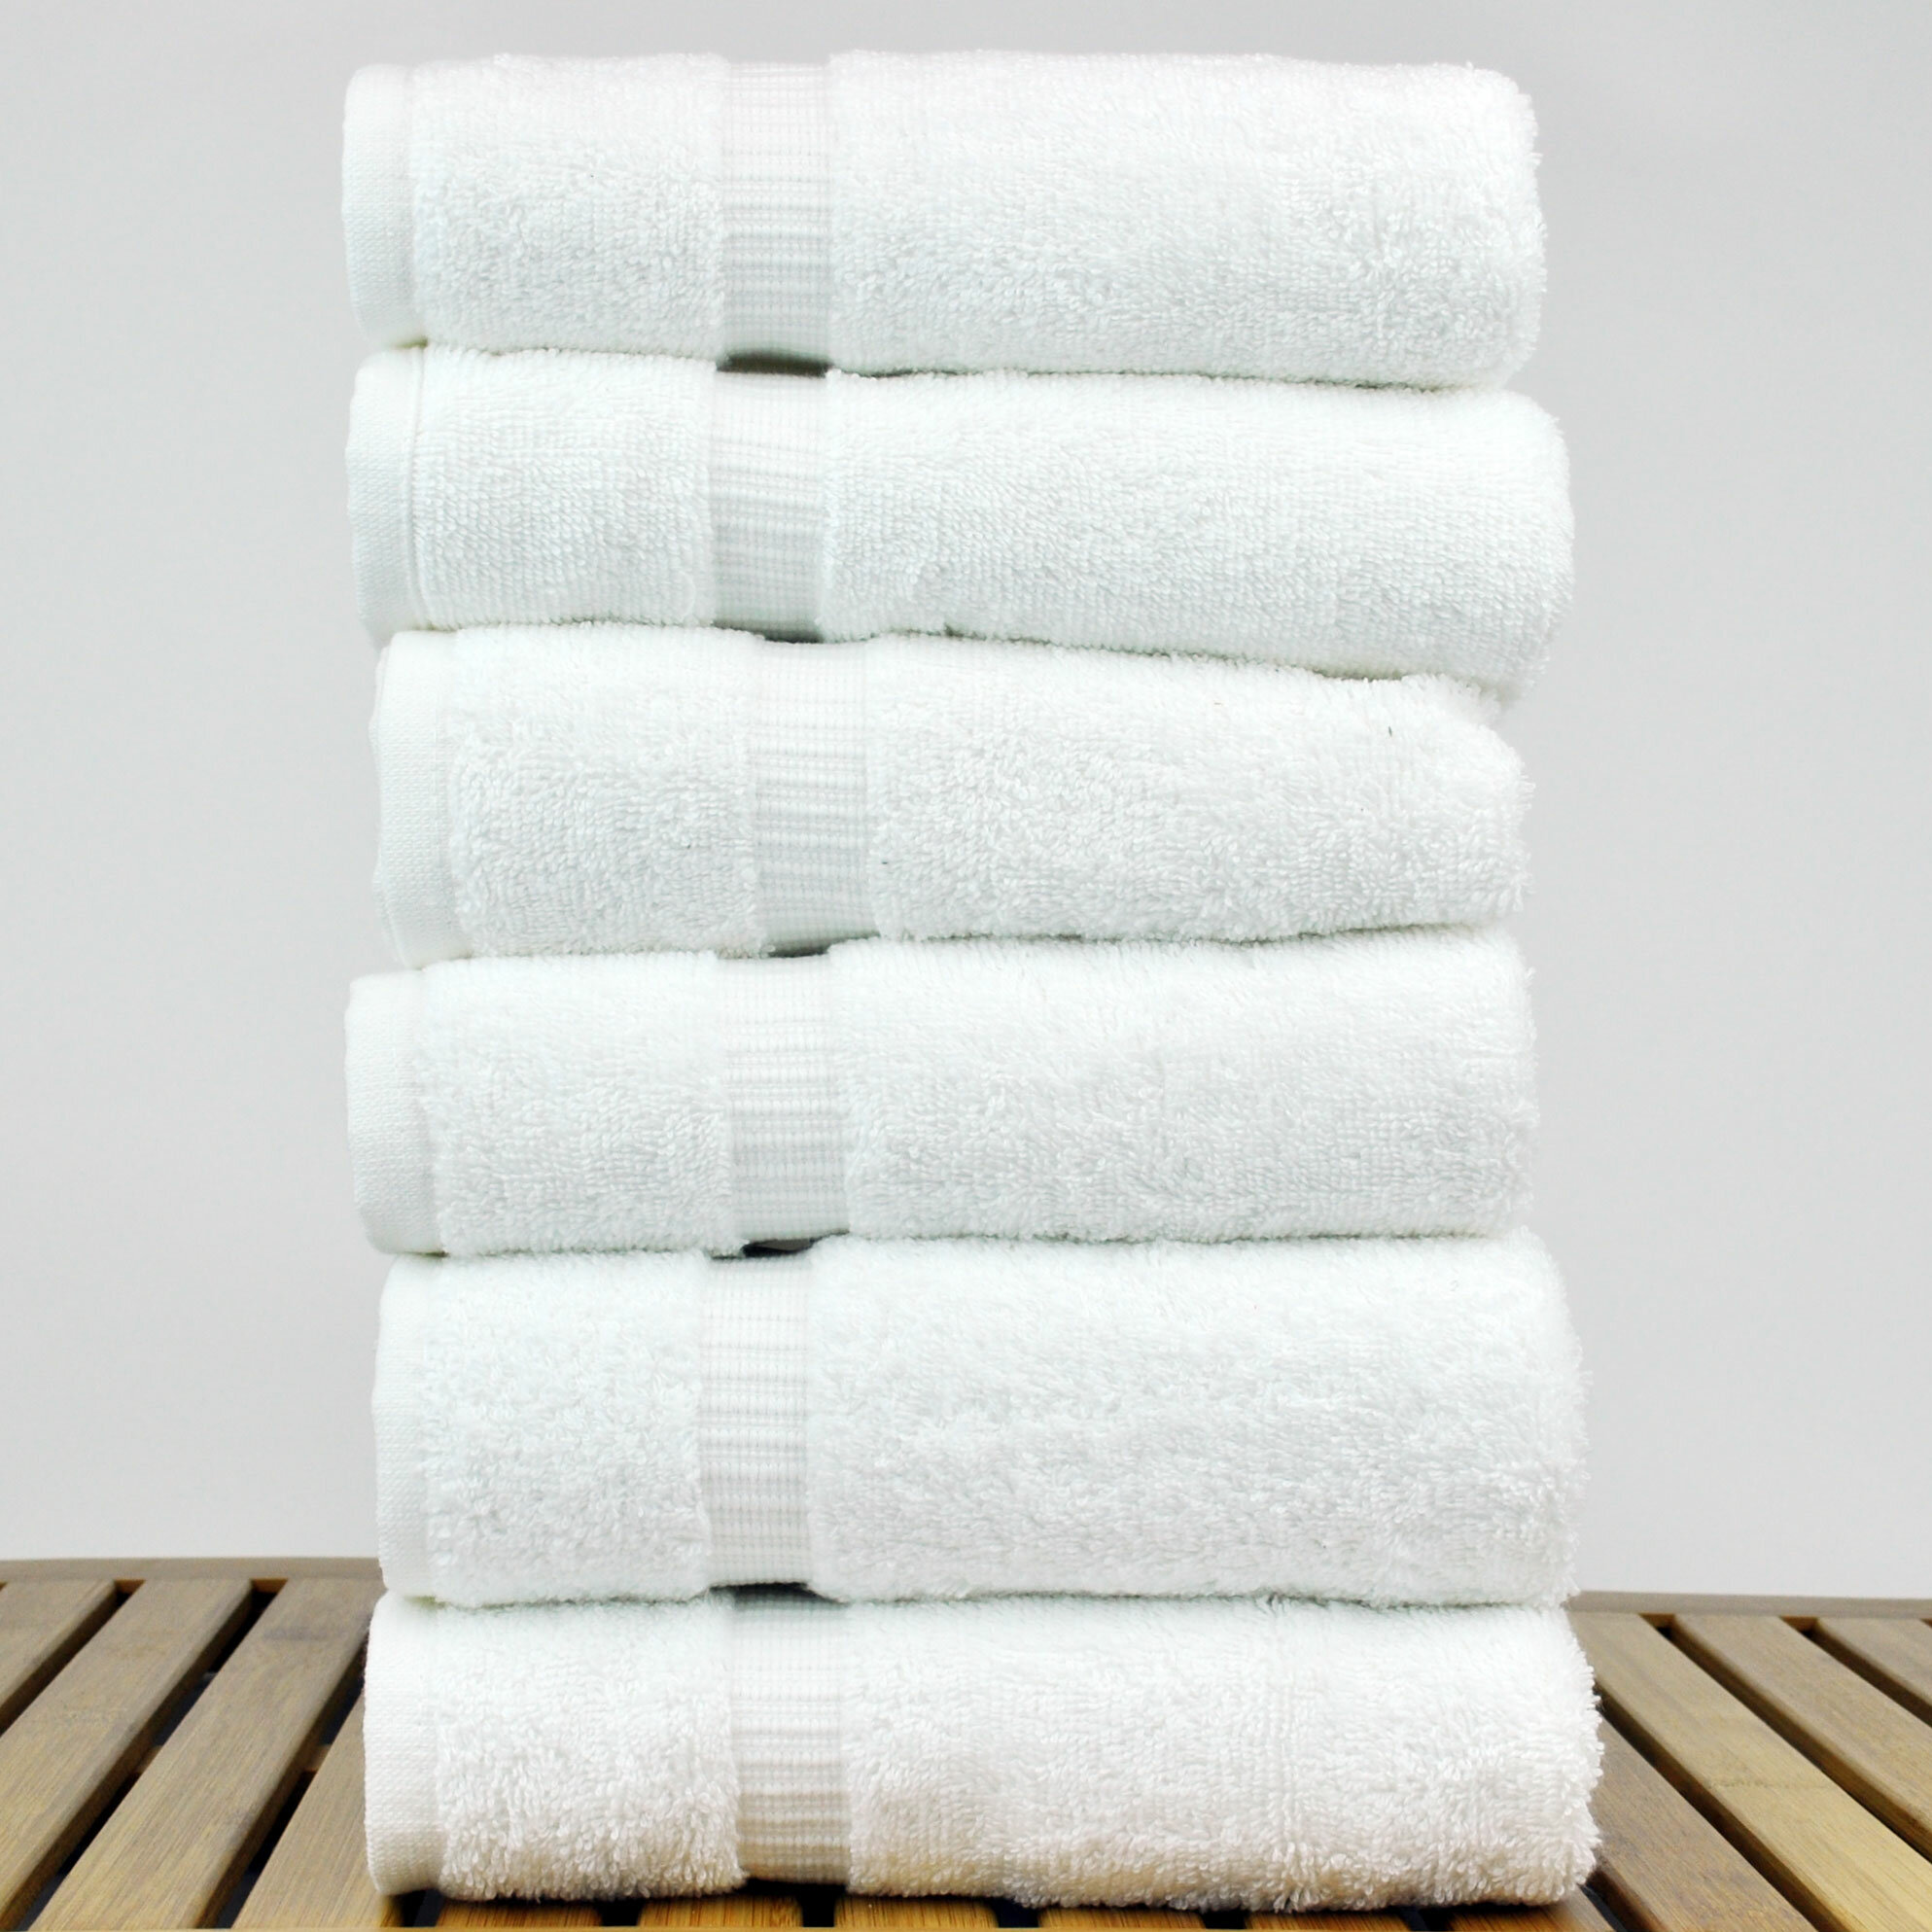 Eco Cotton Towel Sets Dobby Border White 